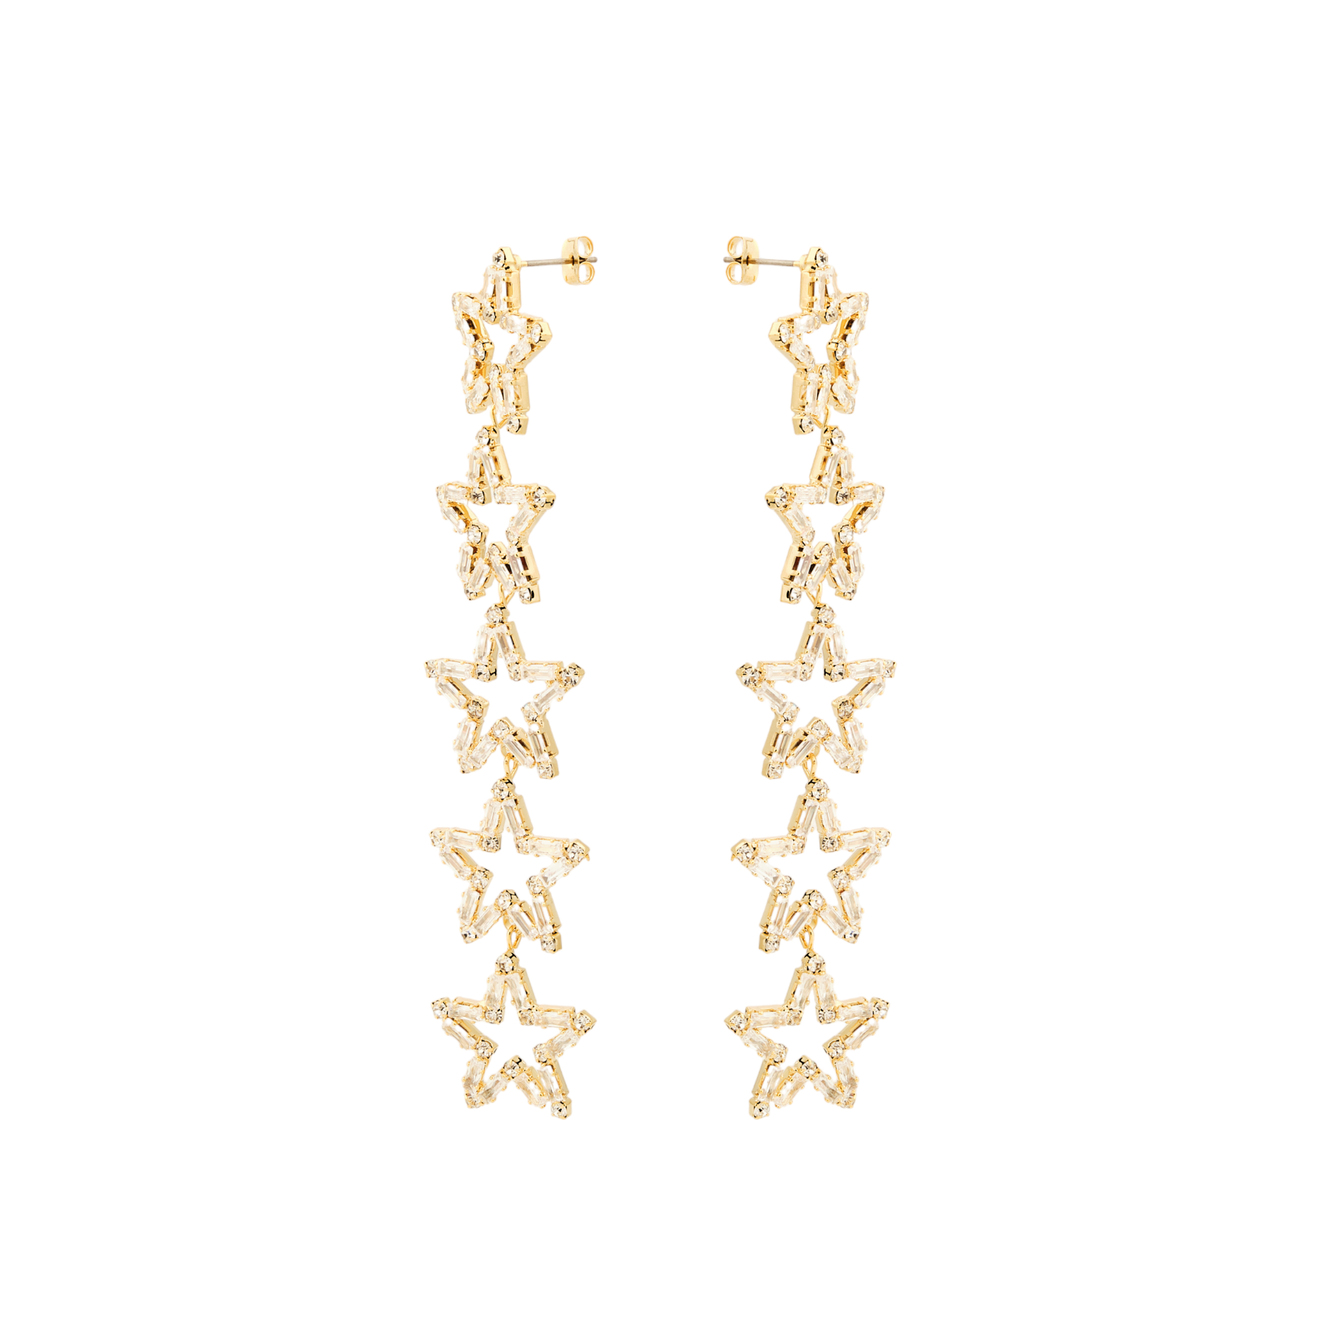 Herald Percy Золотистые длинные серьги с звездами с кристаллами herald percy двойные золотистые серьги с белыми кристаллами